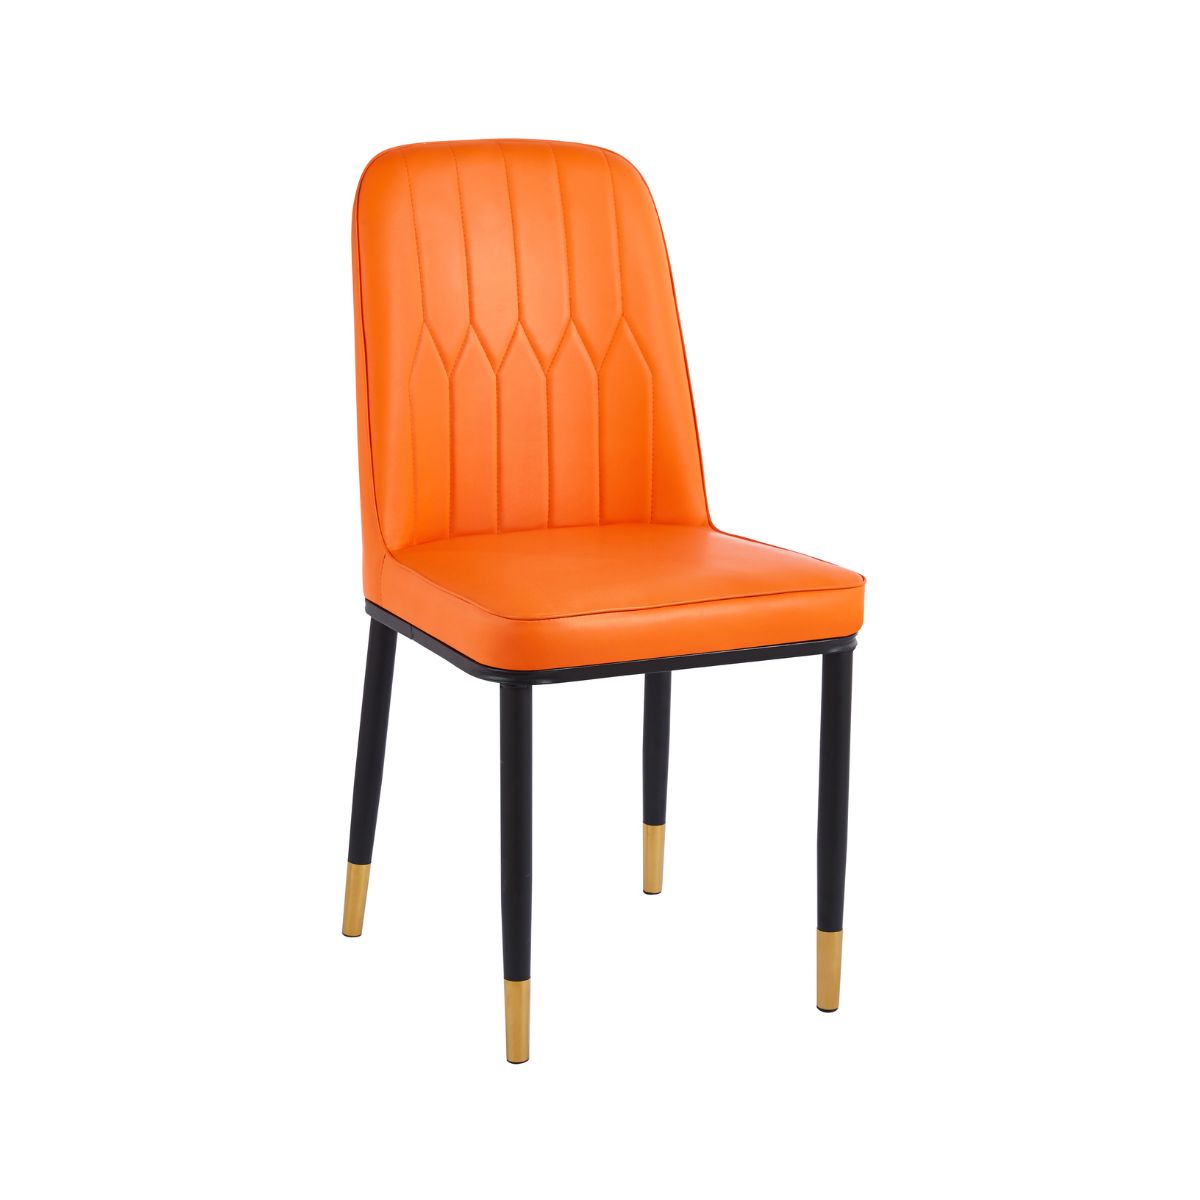 Mobilier interior - Scaun cu cadru metalic tapitat cu piele artificiala de culoare portocaliu, hectarul.ro